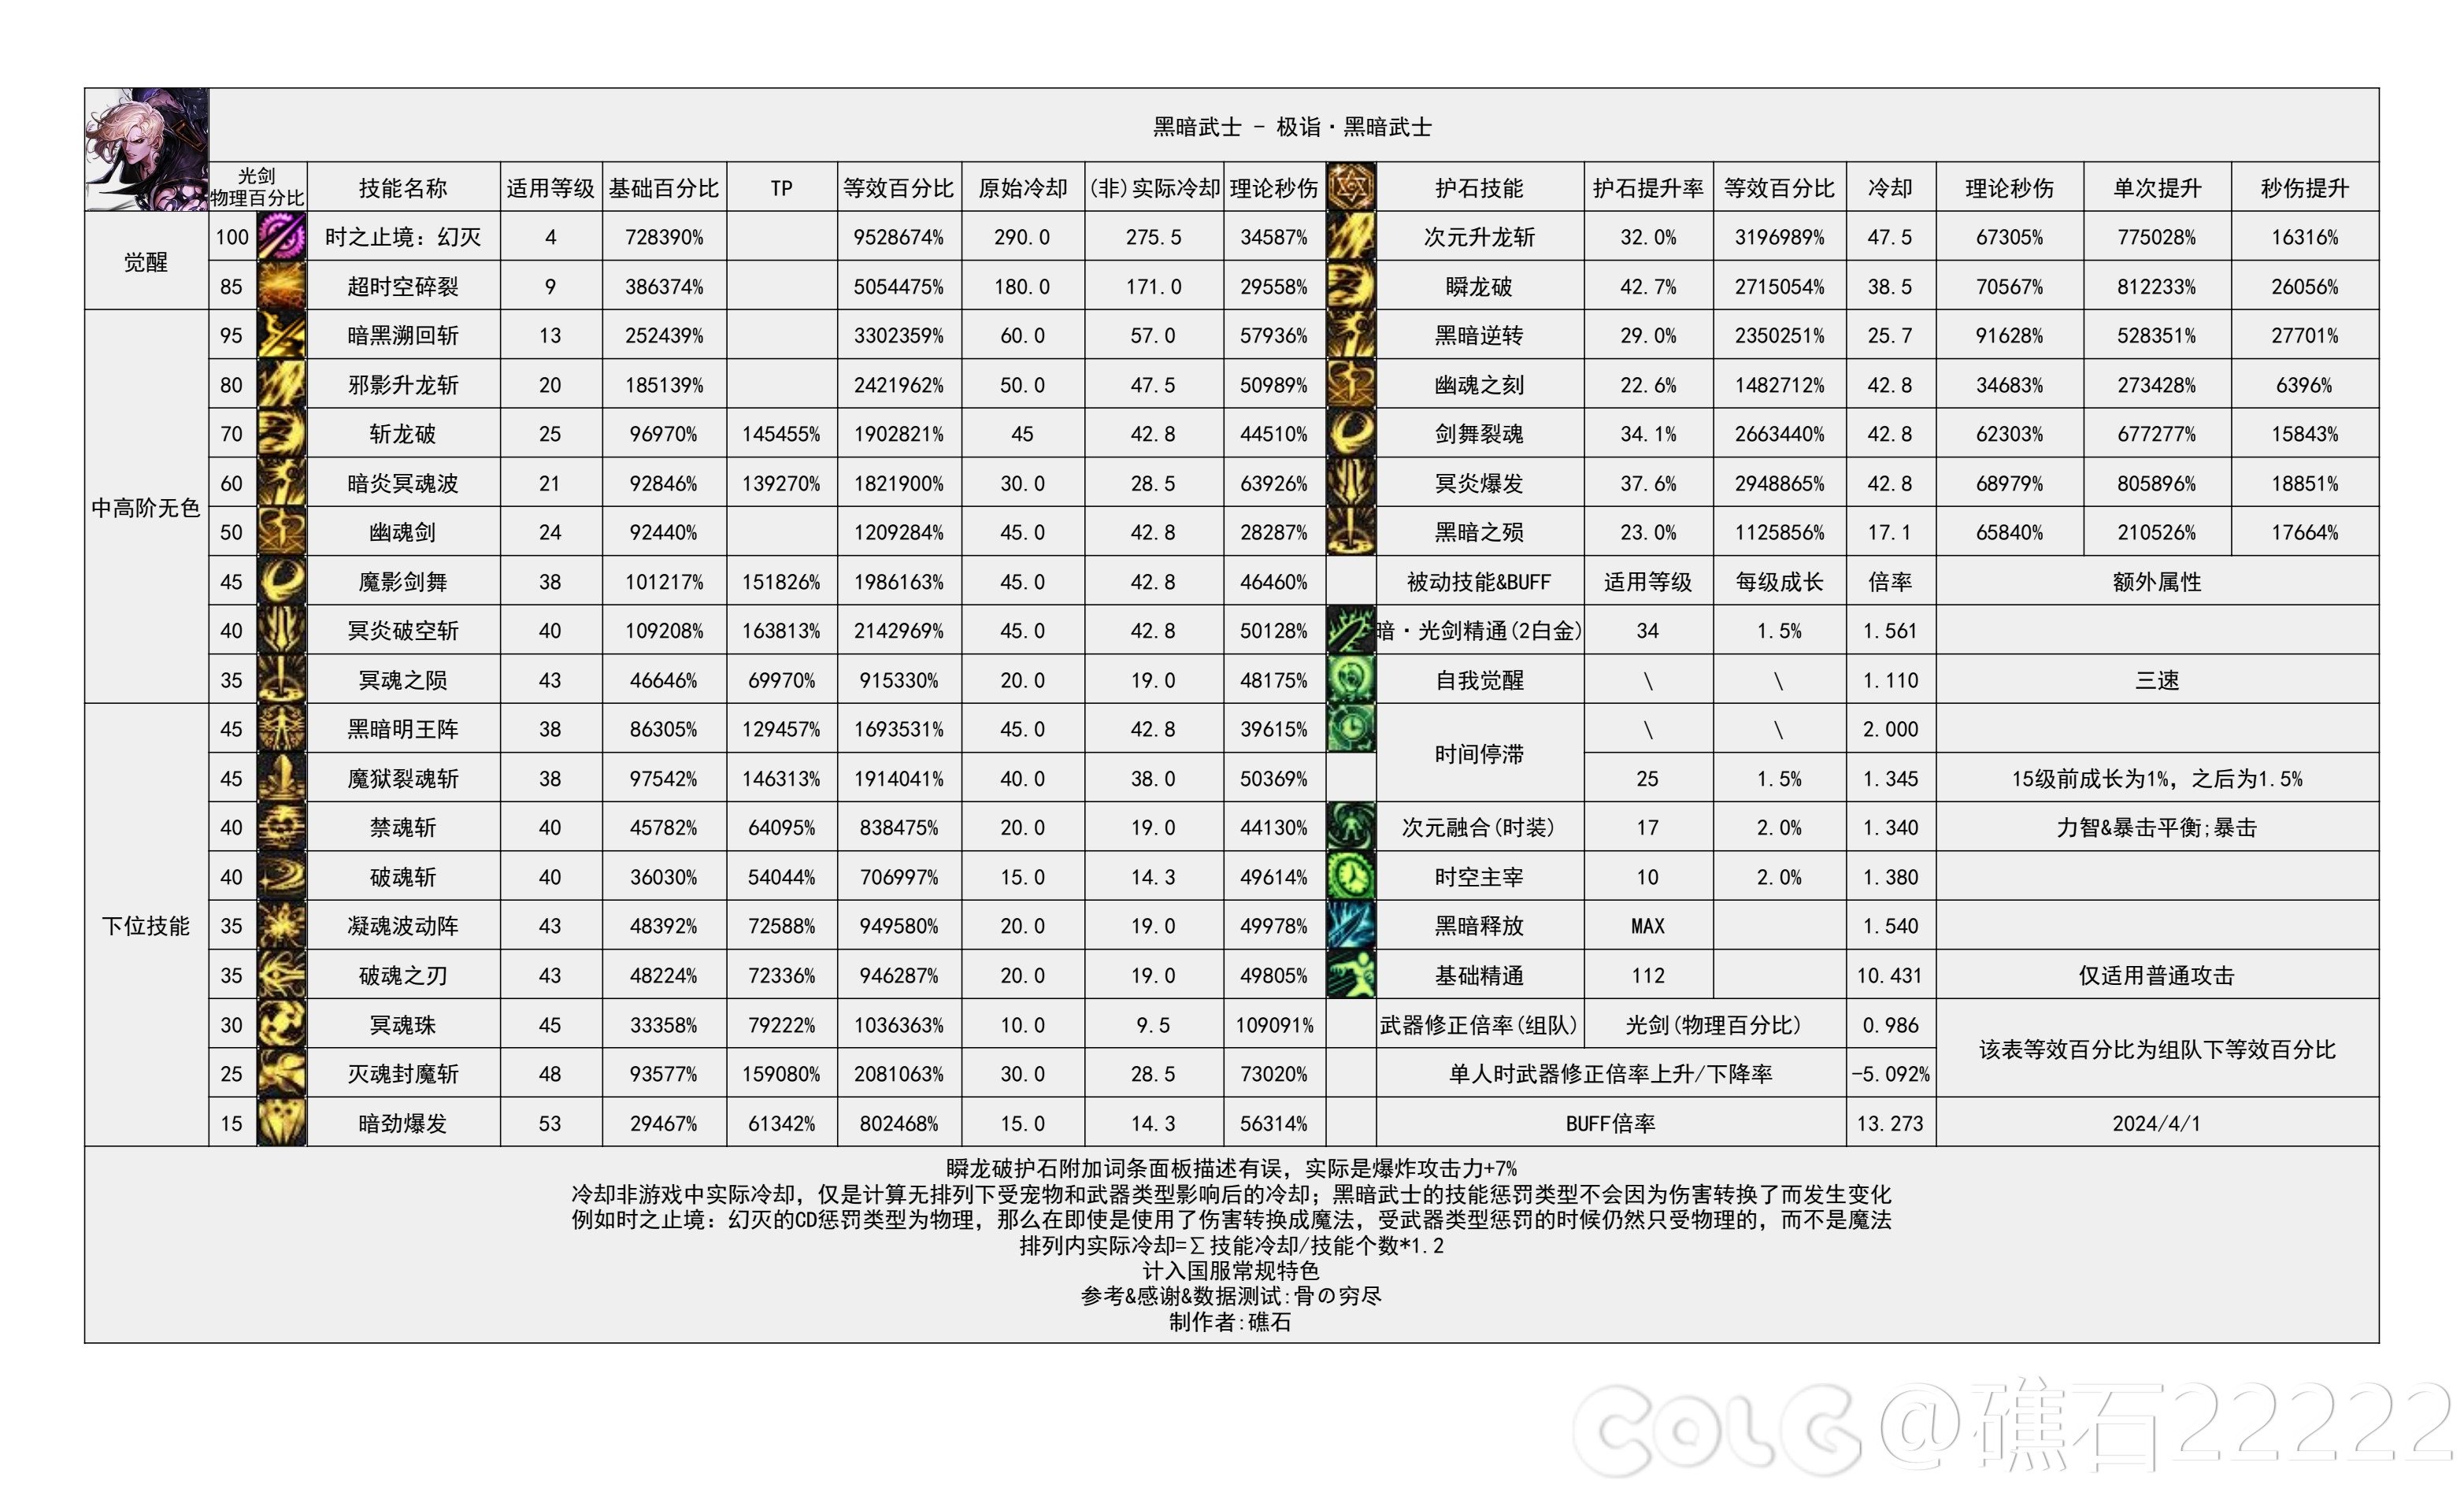 【国服现状】110版本输出职业数据表(国正5.15)(最新)81